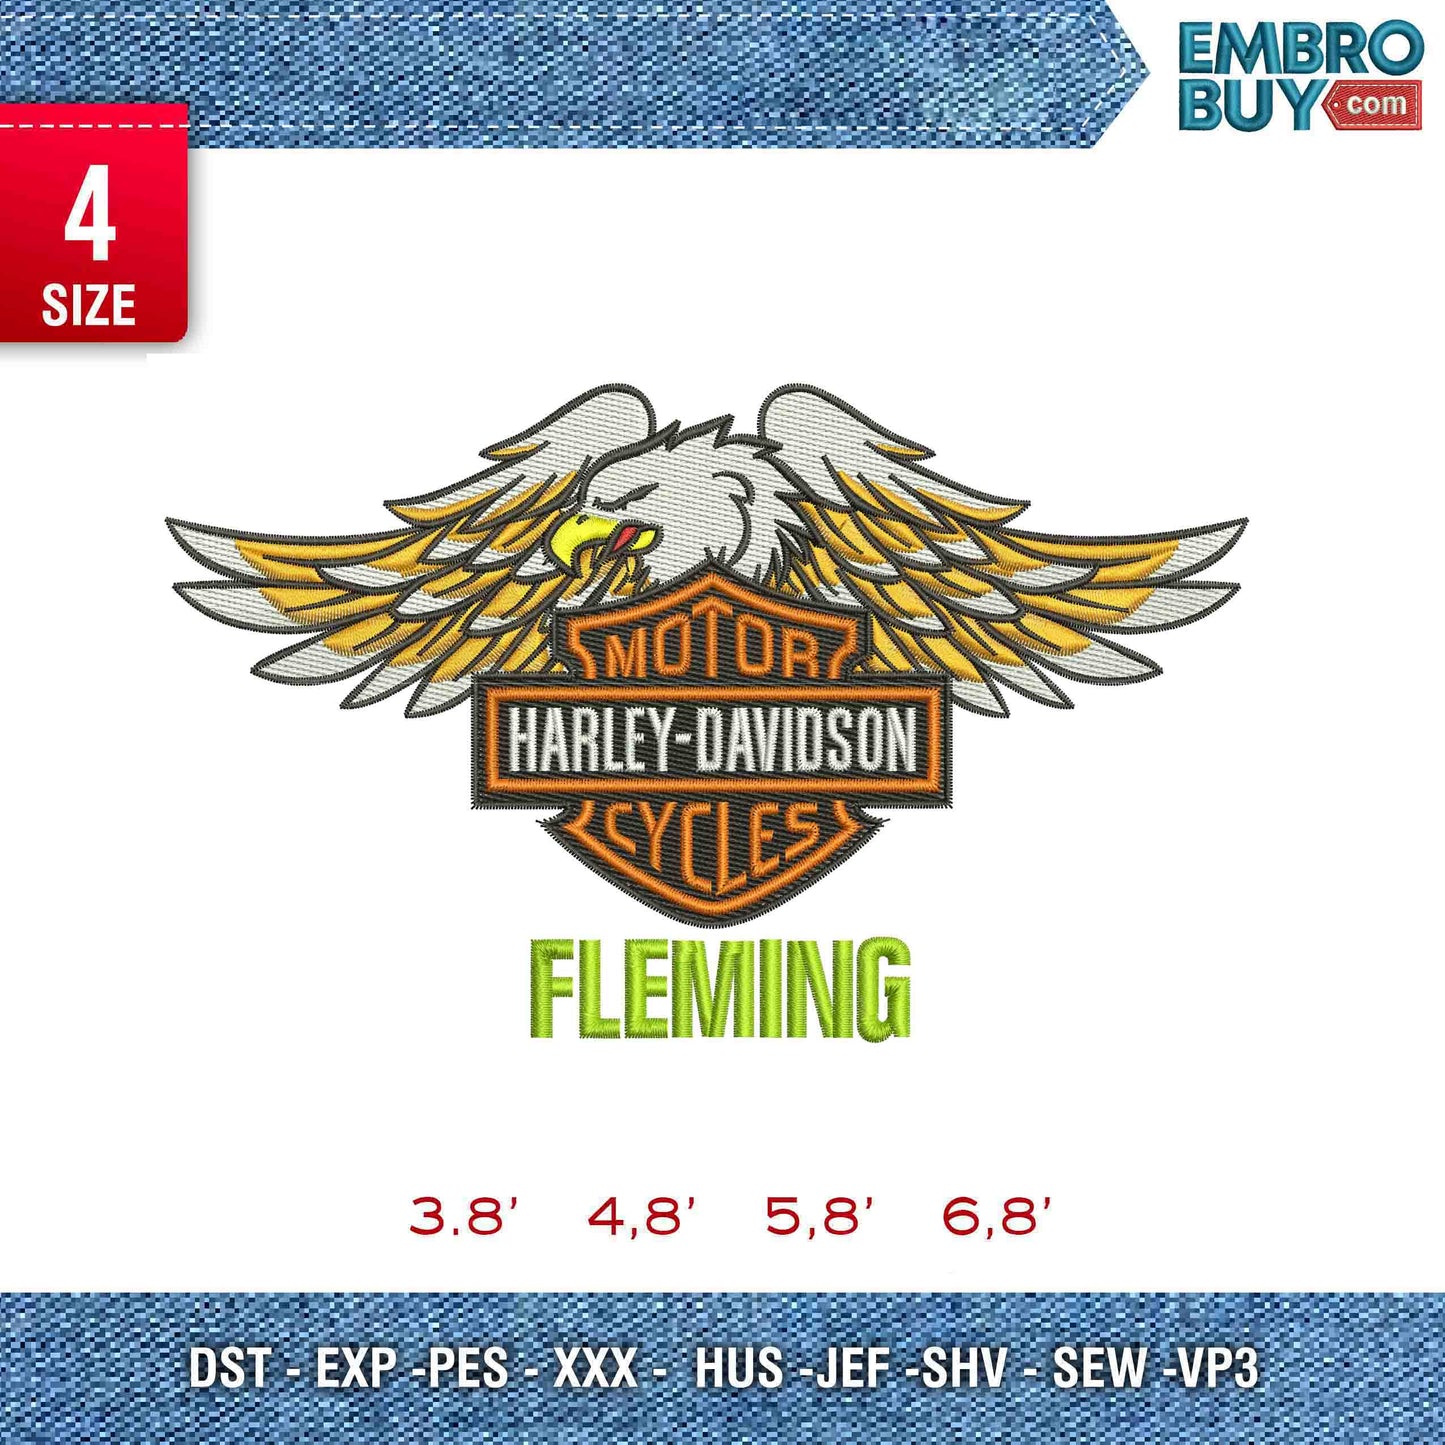 Harley Davidson Fleming